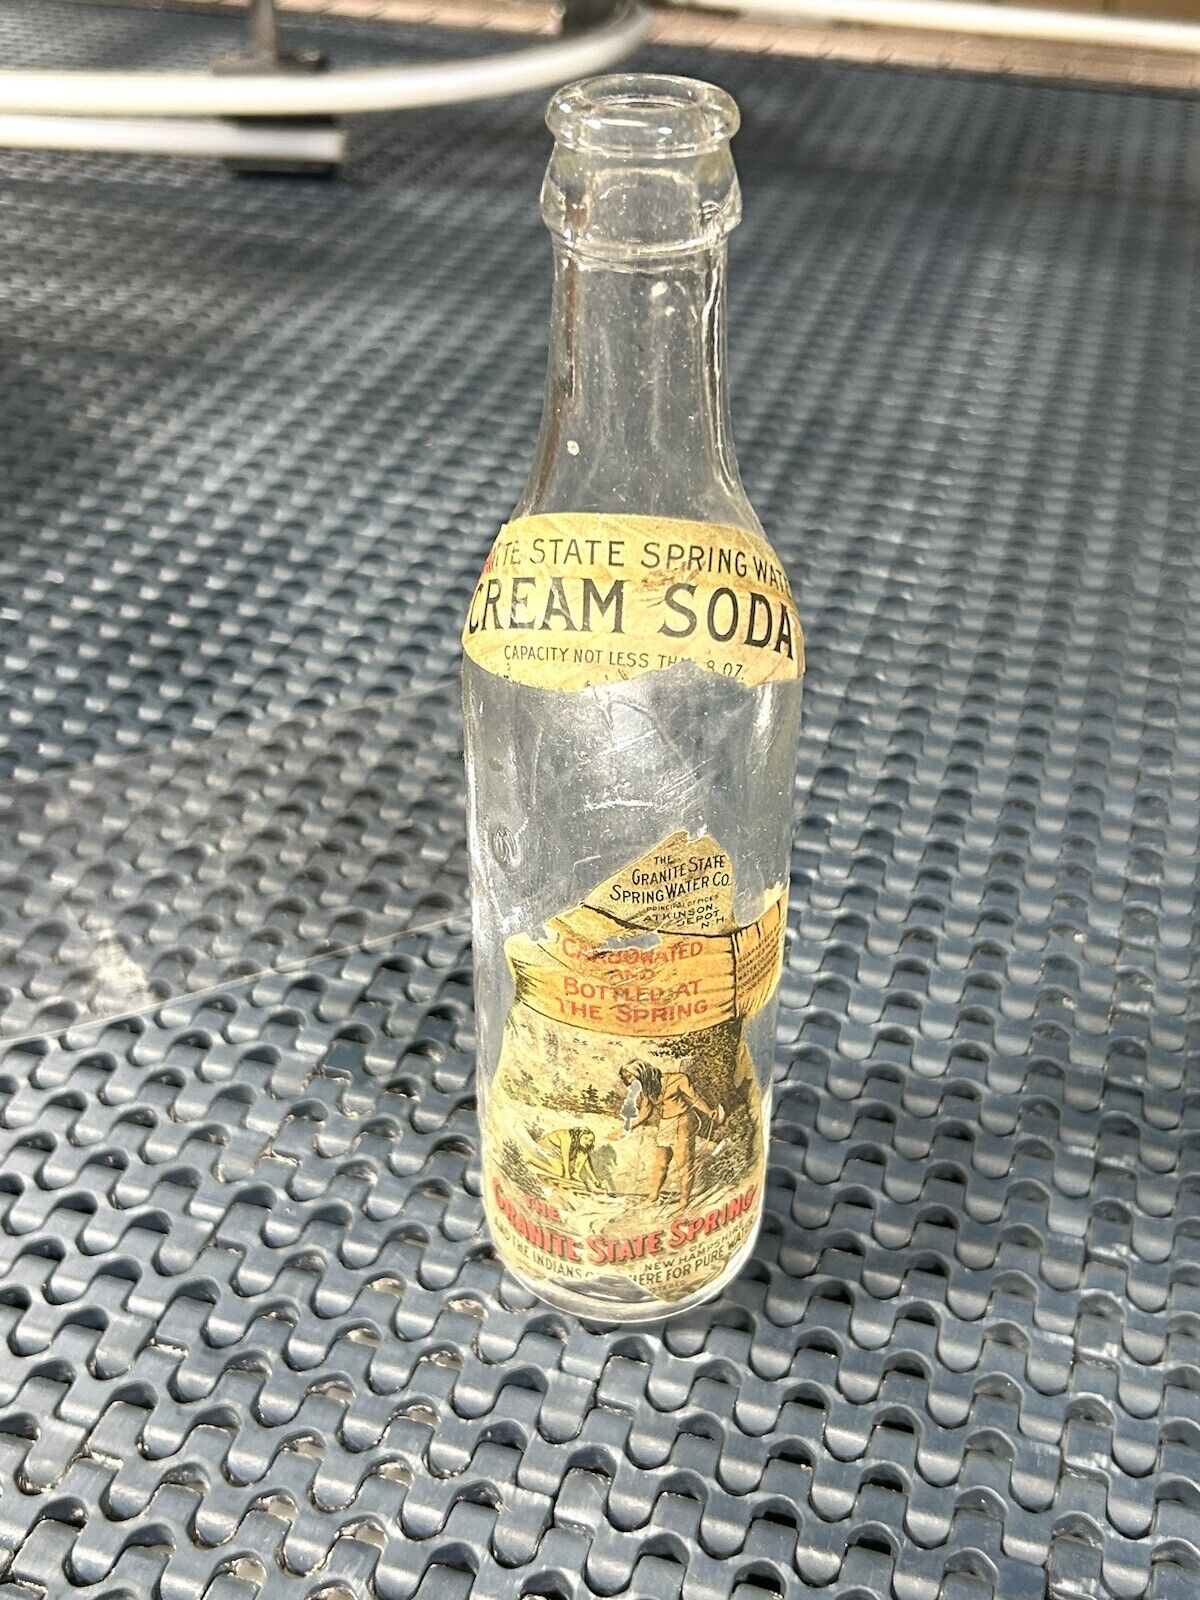 Granite State Spring Water Co. Cream Soda 8oz Paper Label Soda Bottle, NH.